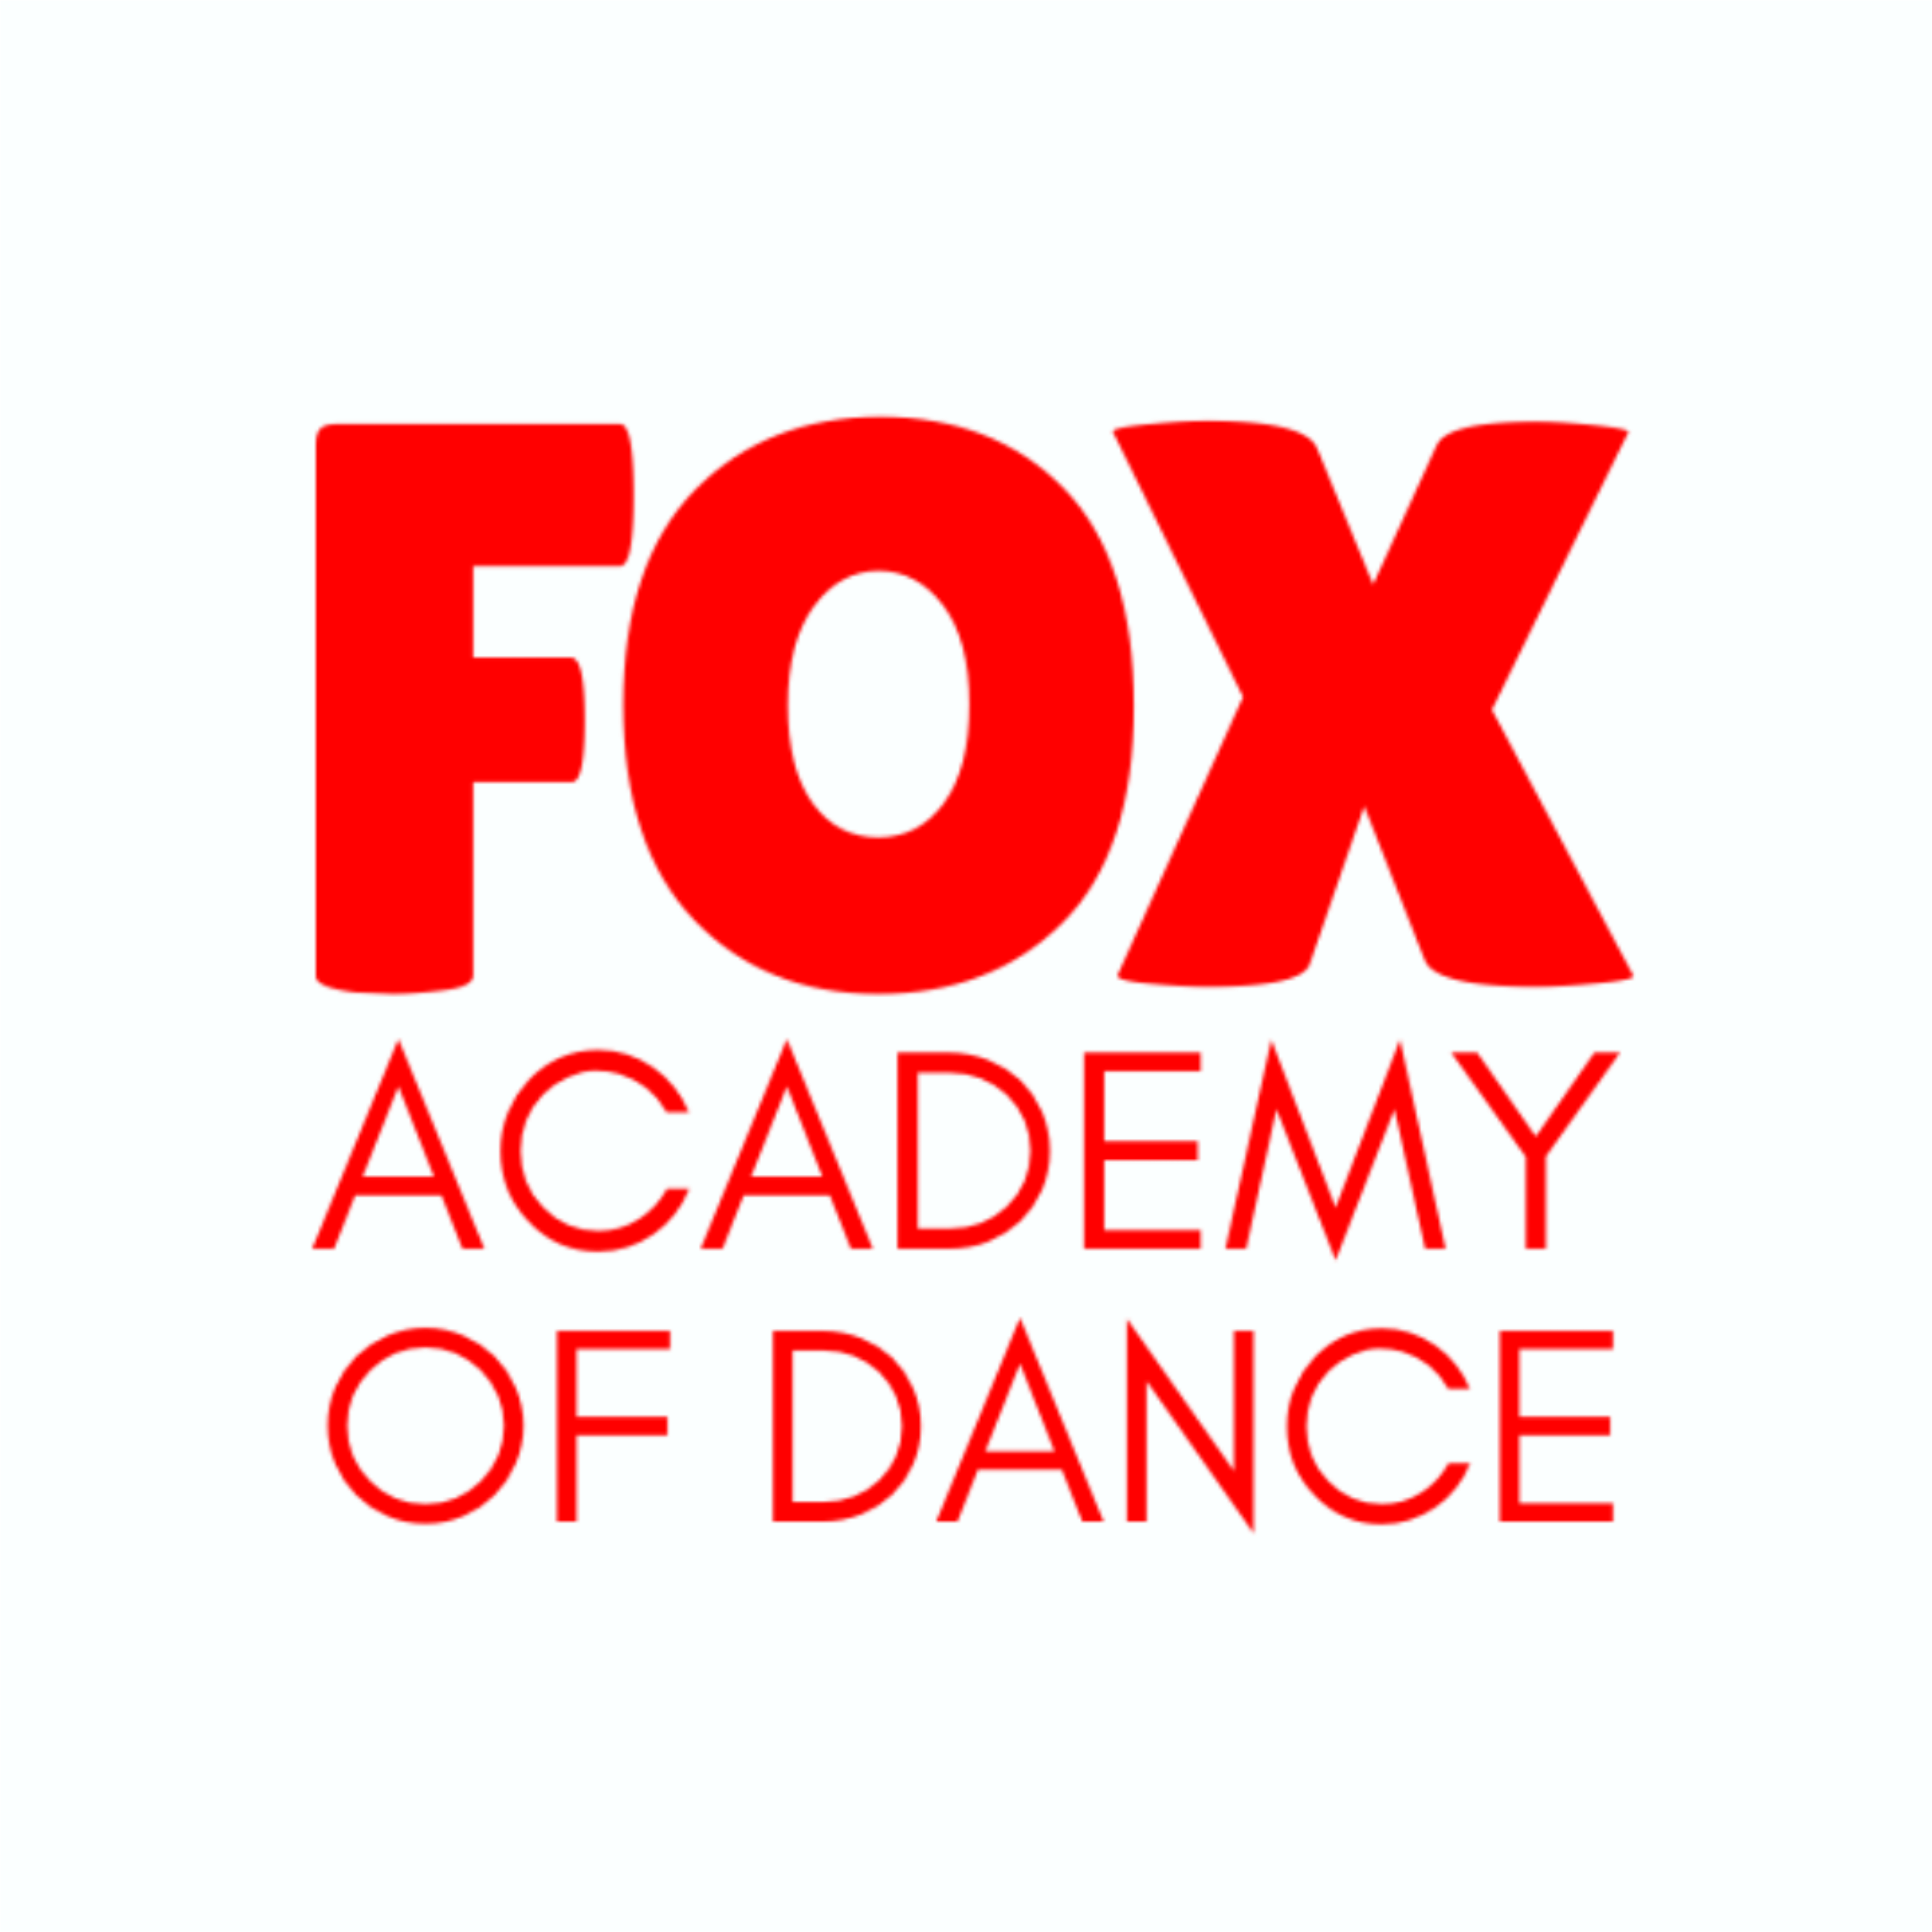 Foxacademyofdance logo